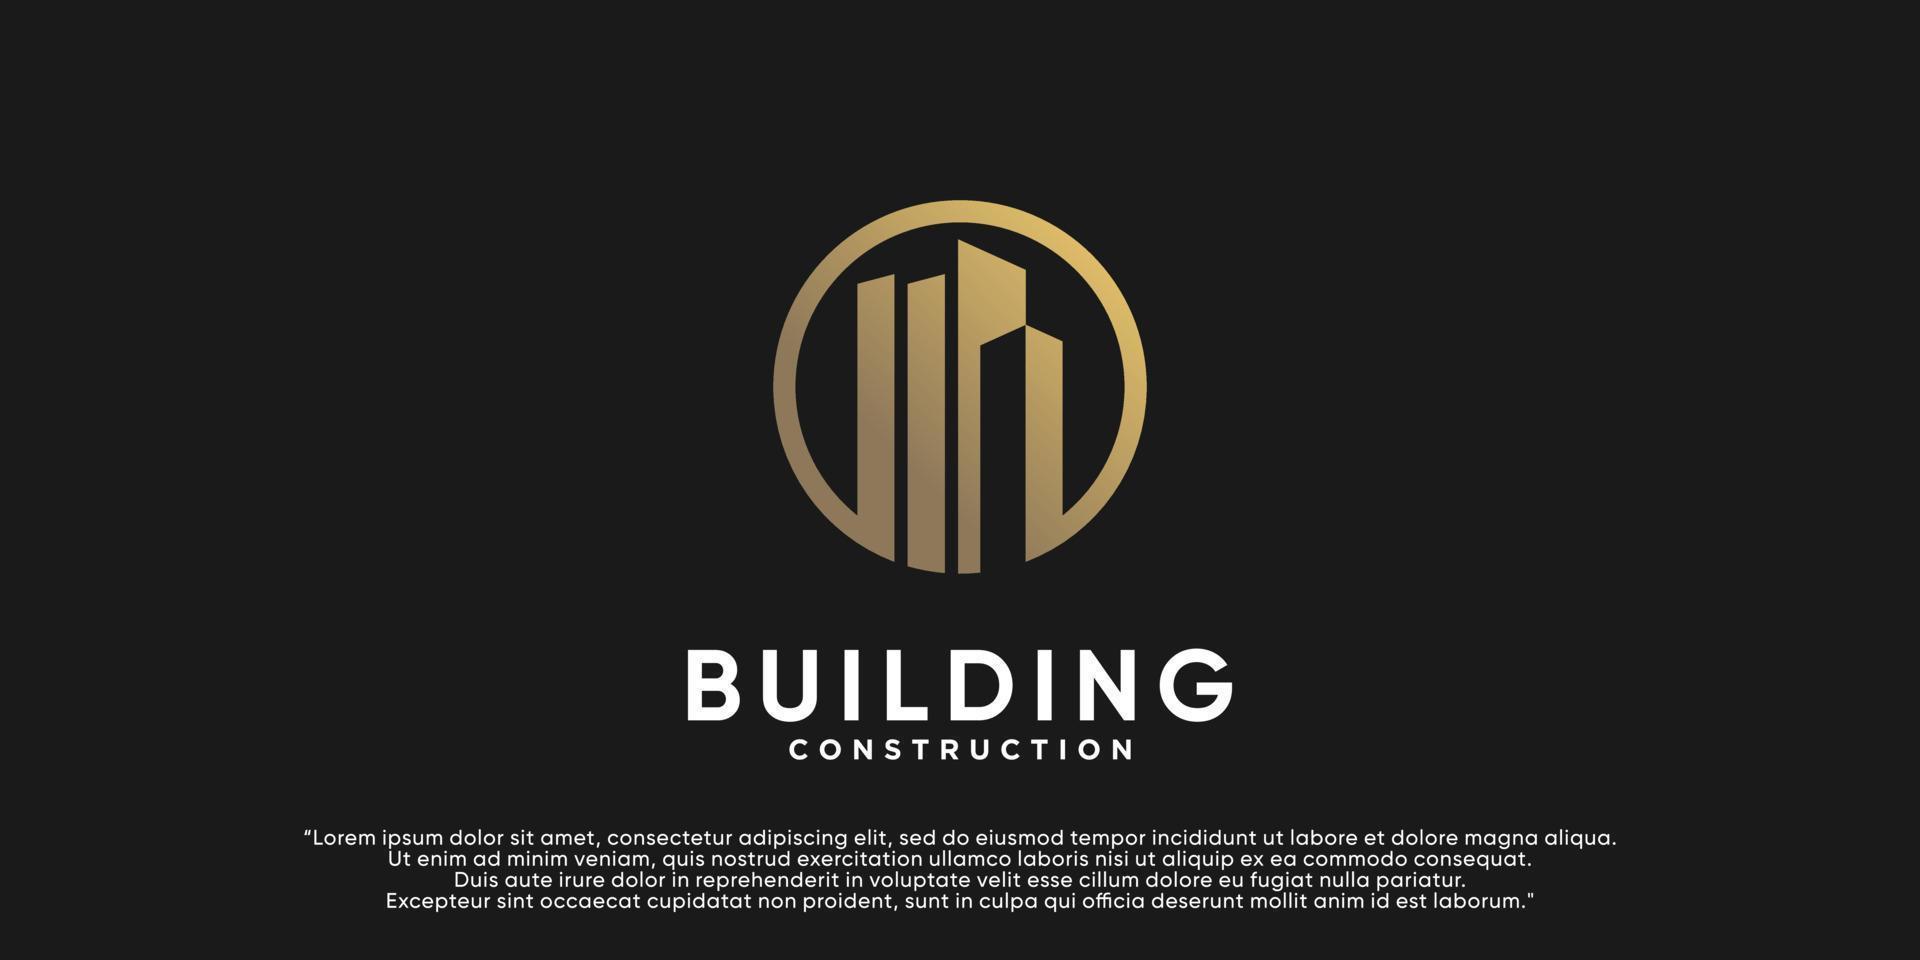 gebouw logo ontwerp illustratie voor bedrijf bouw met creatief concept premie vector